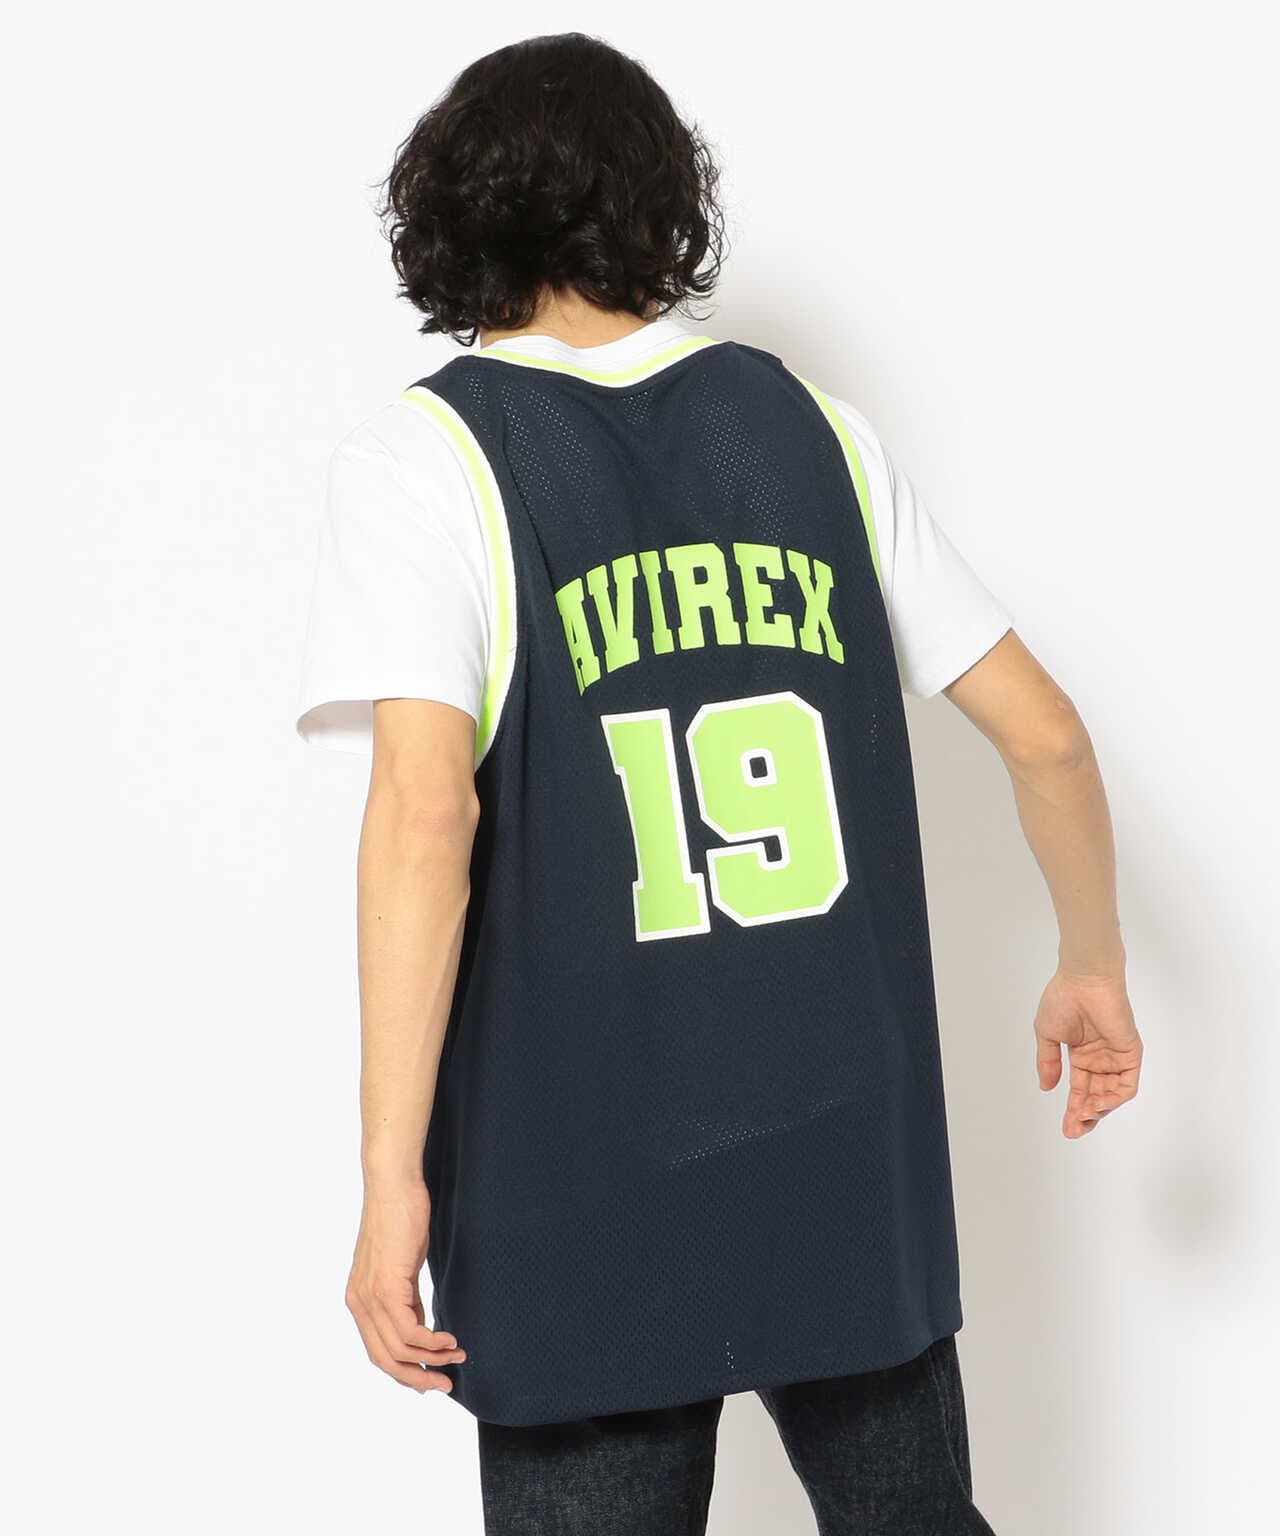 【在庫国産】AVIREX メッシュバスケットボールユニフォーム バスケットボール